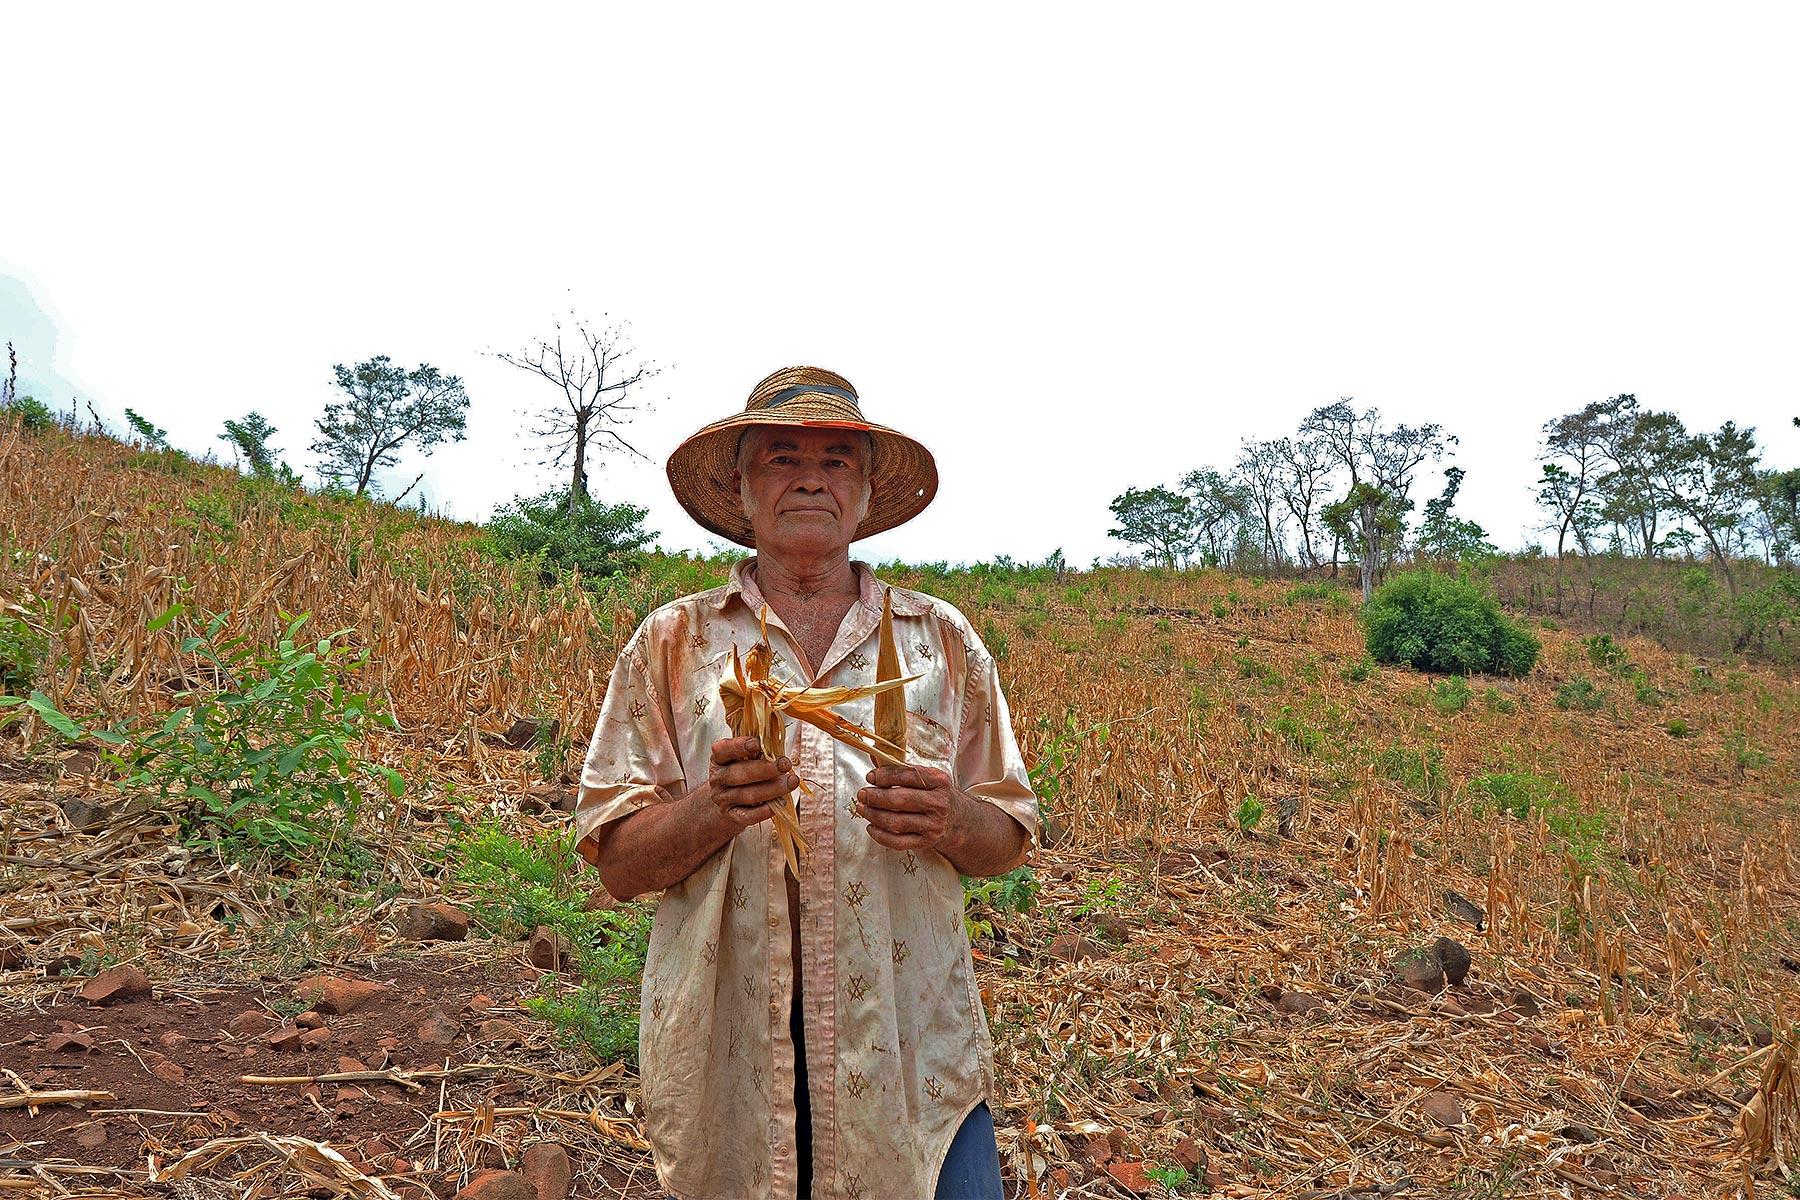 Ein Landwirt in El Salvador zeigt die Auswirkungen einer langanhaltenden Dürre auf seine Maisernte. LWB/C. Kästner